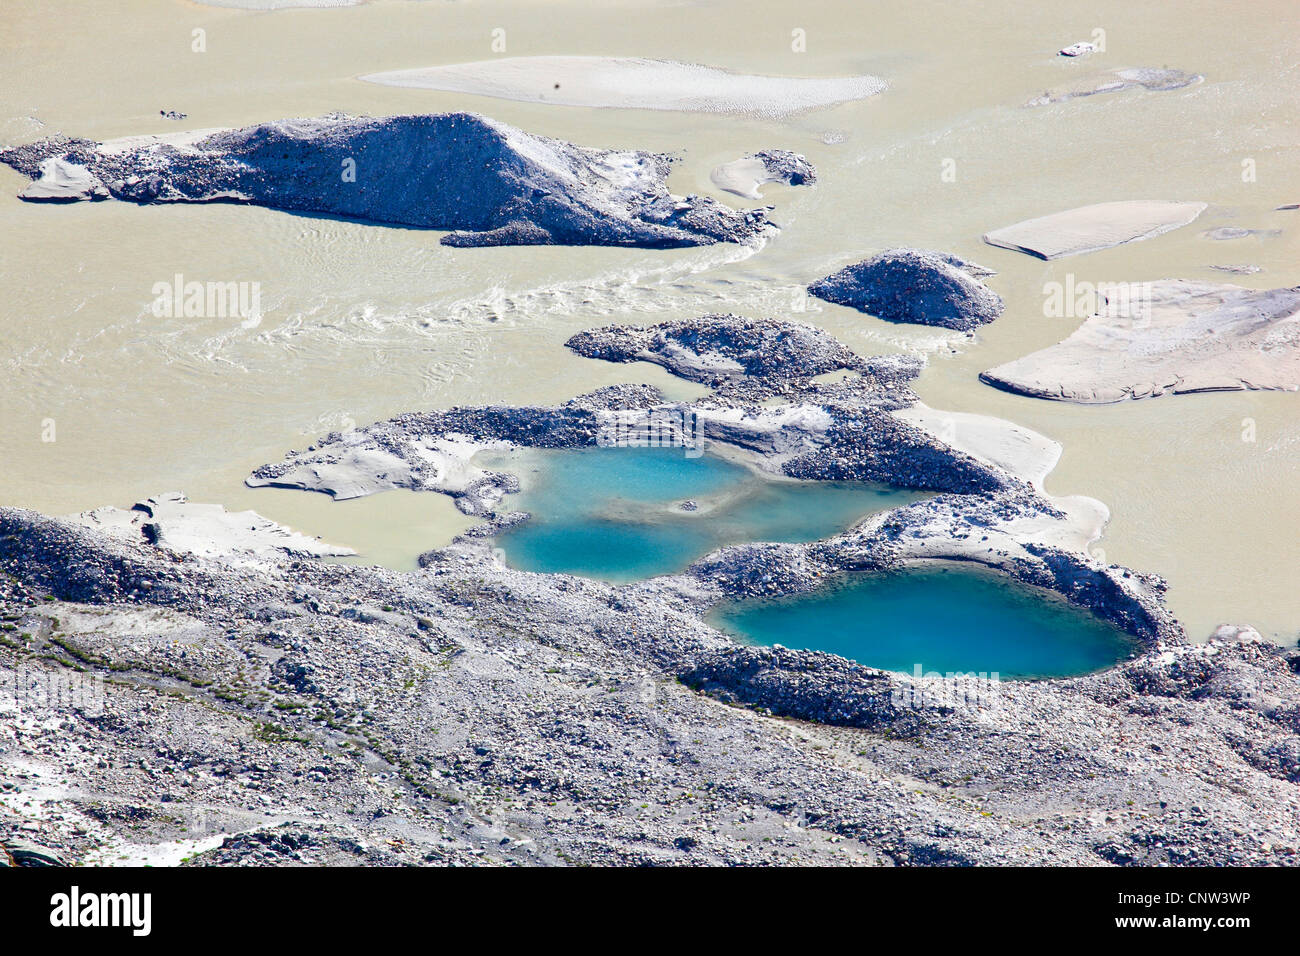 Schmelzen Sie, Wasserpfützen und Schlamm und Geröll Sedimente der Pasterze (mit 9 km Länge der größte Gletscher des Landes), Österreich, Nationalpark Hohe Tauern Stockfoto